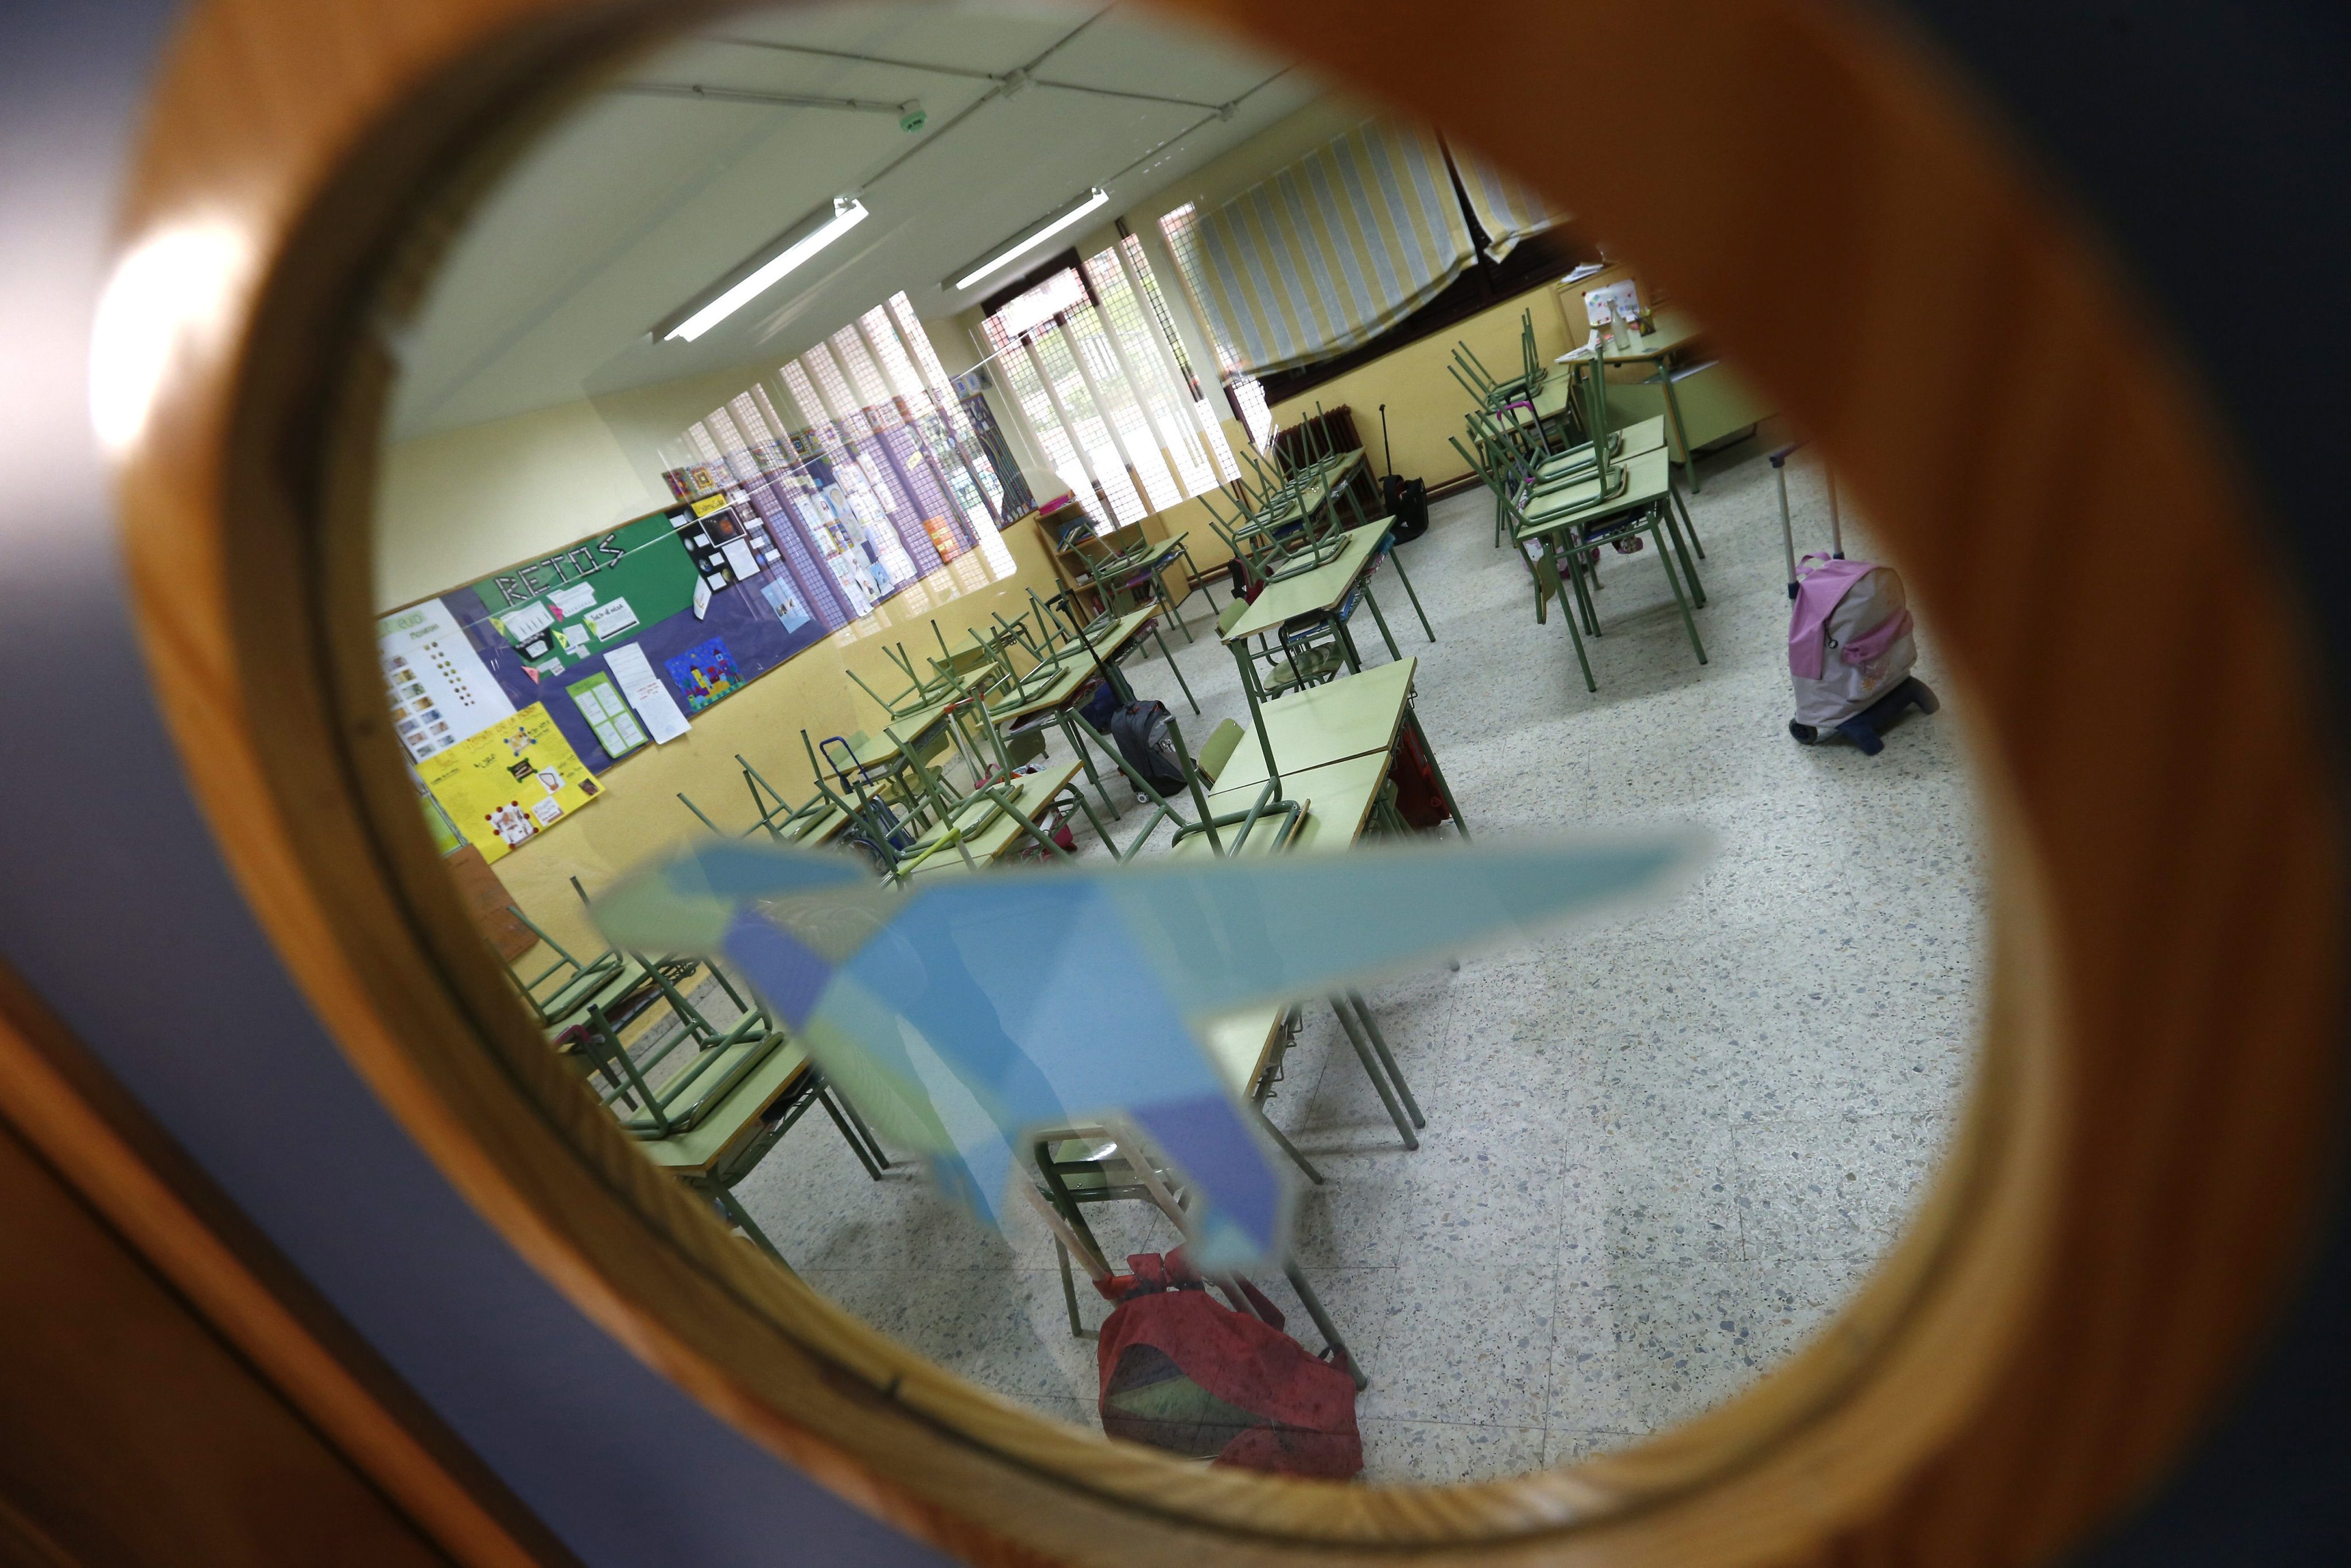 Βρετανία: Μία ώρα αργότερα θα αρχίζουν τα μαθήματα στα σχολεία